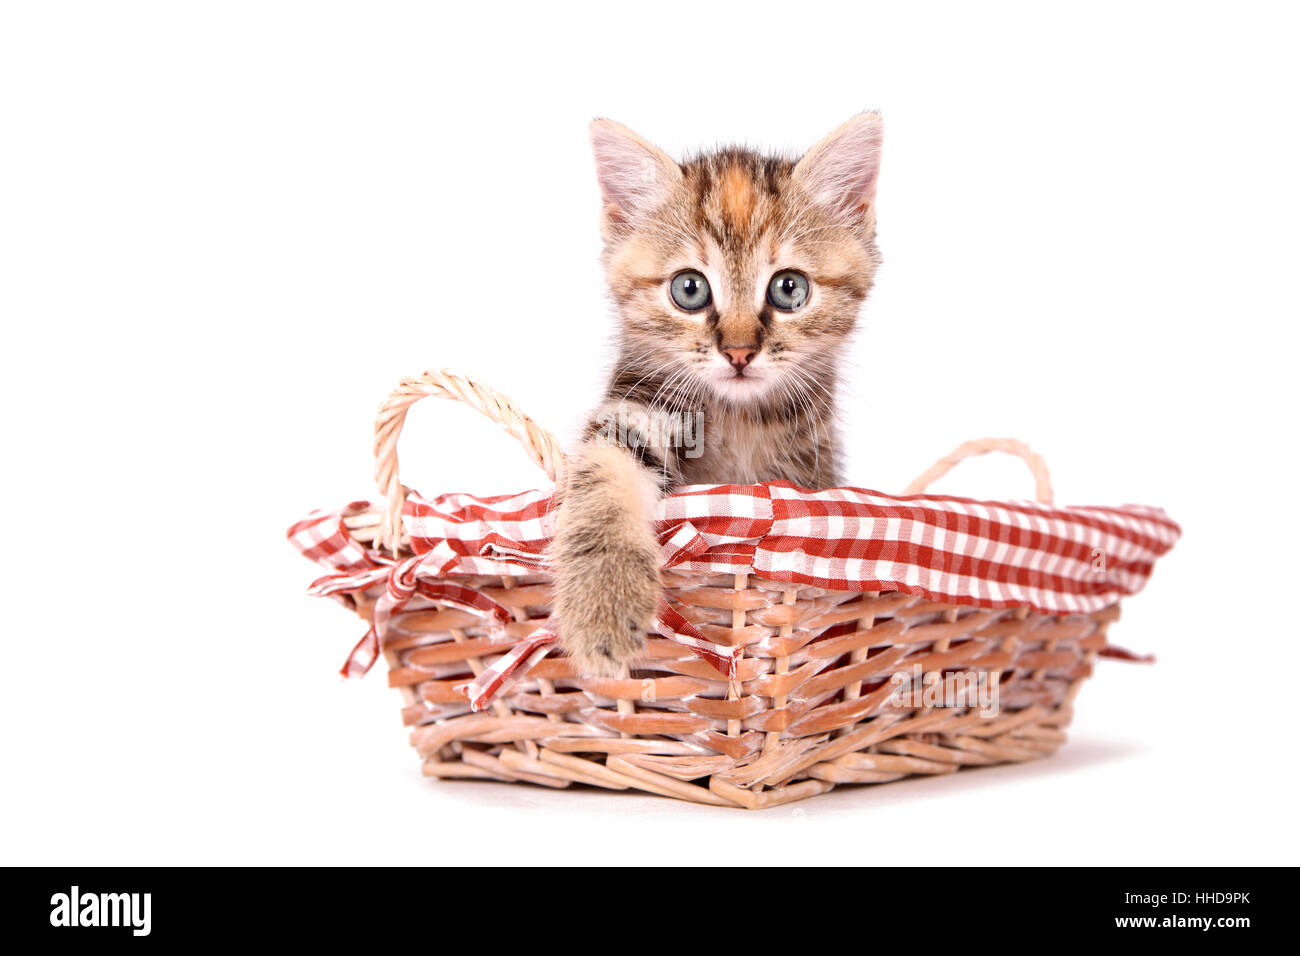 Europaeisch Kurzhaar. Kitten (6 weeks old) in a wicker basket. Studio picture against a white background Stock Photo